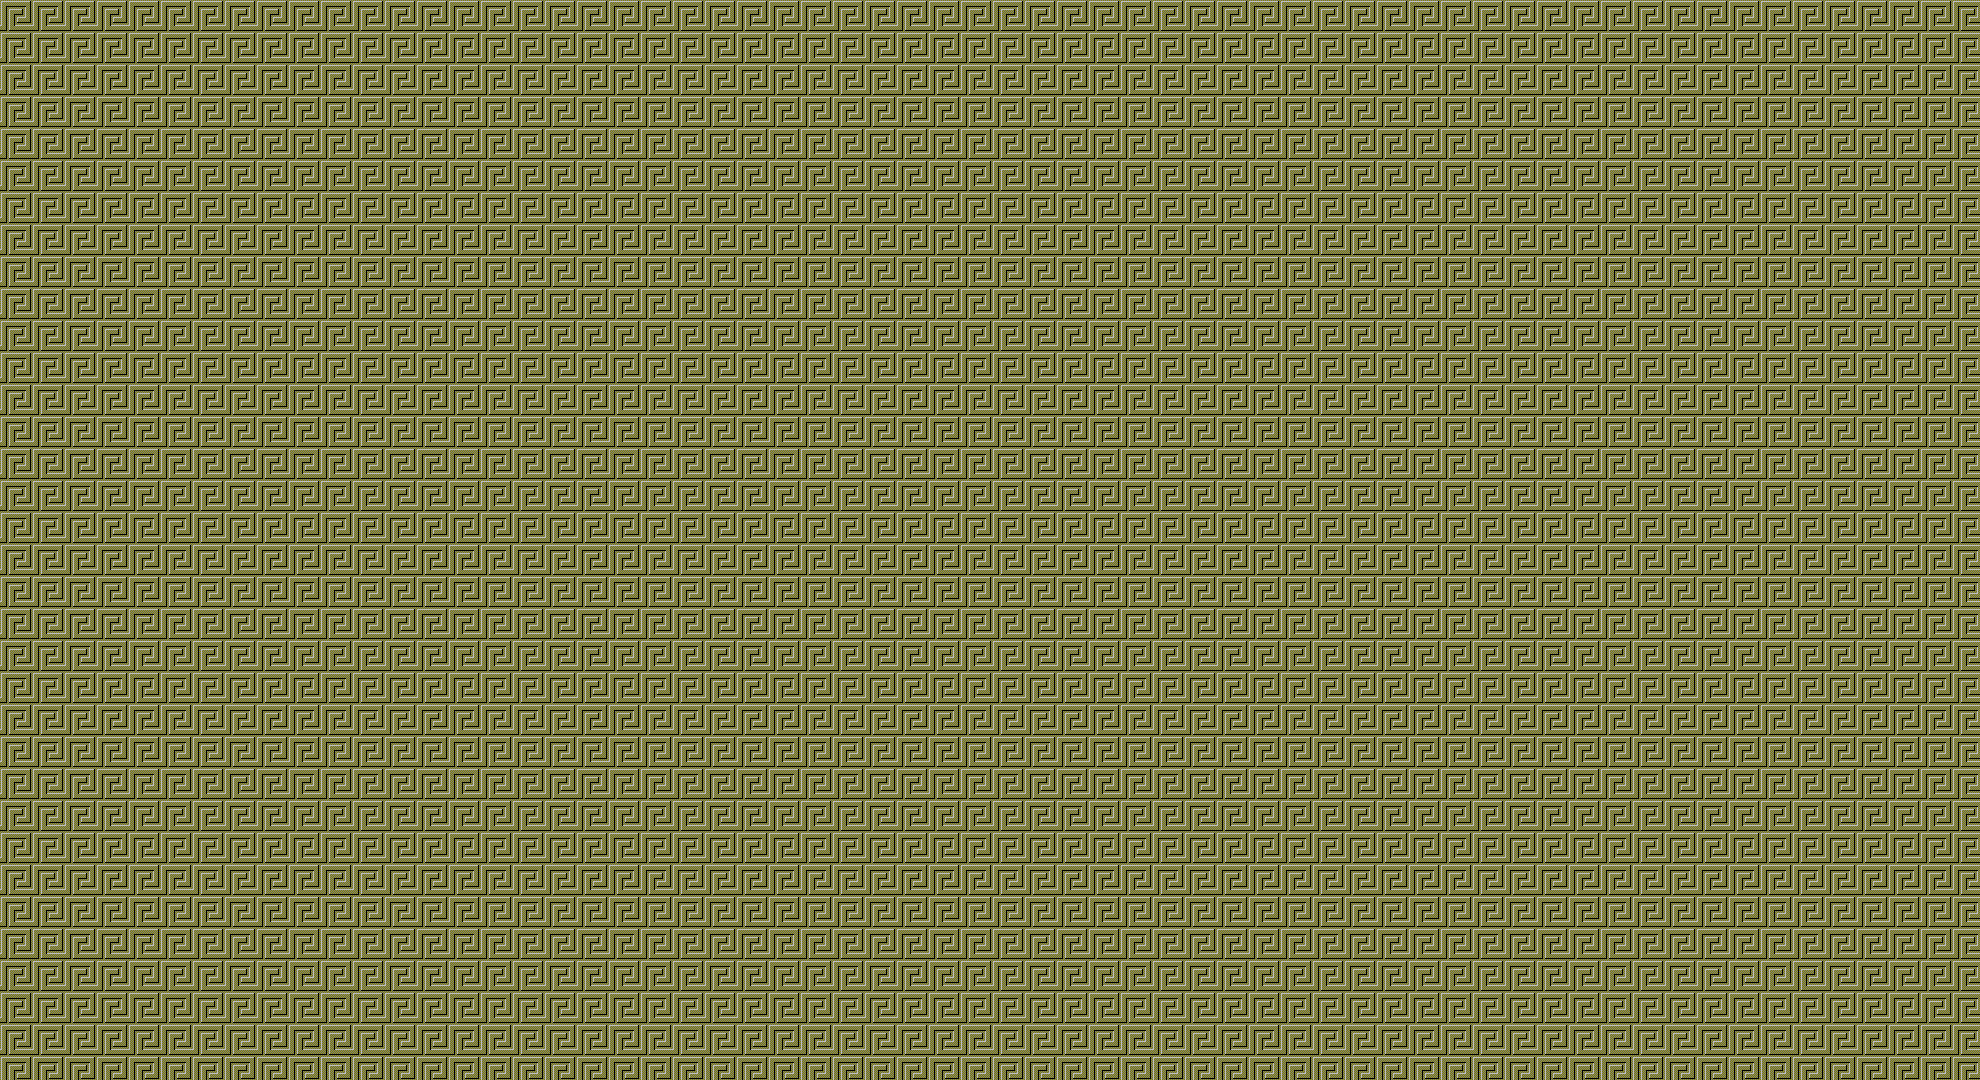 49+] Windows 95 Wallpaper Patterns - WallpaperSafari